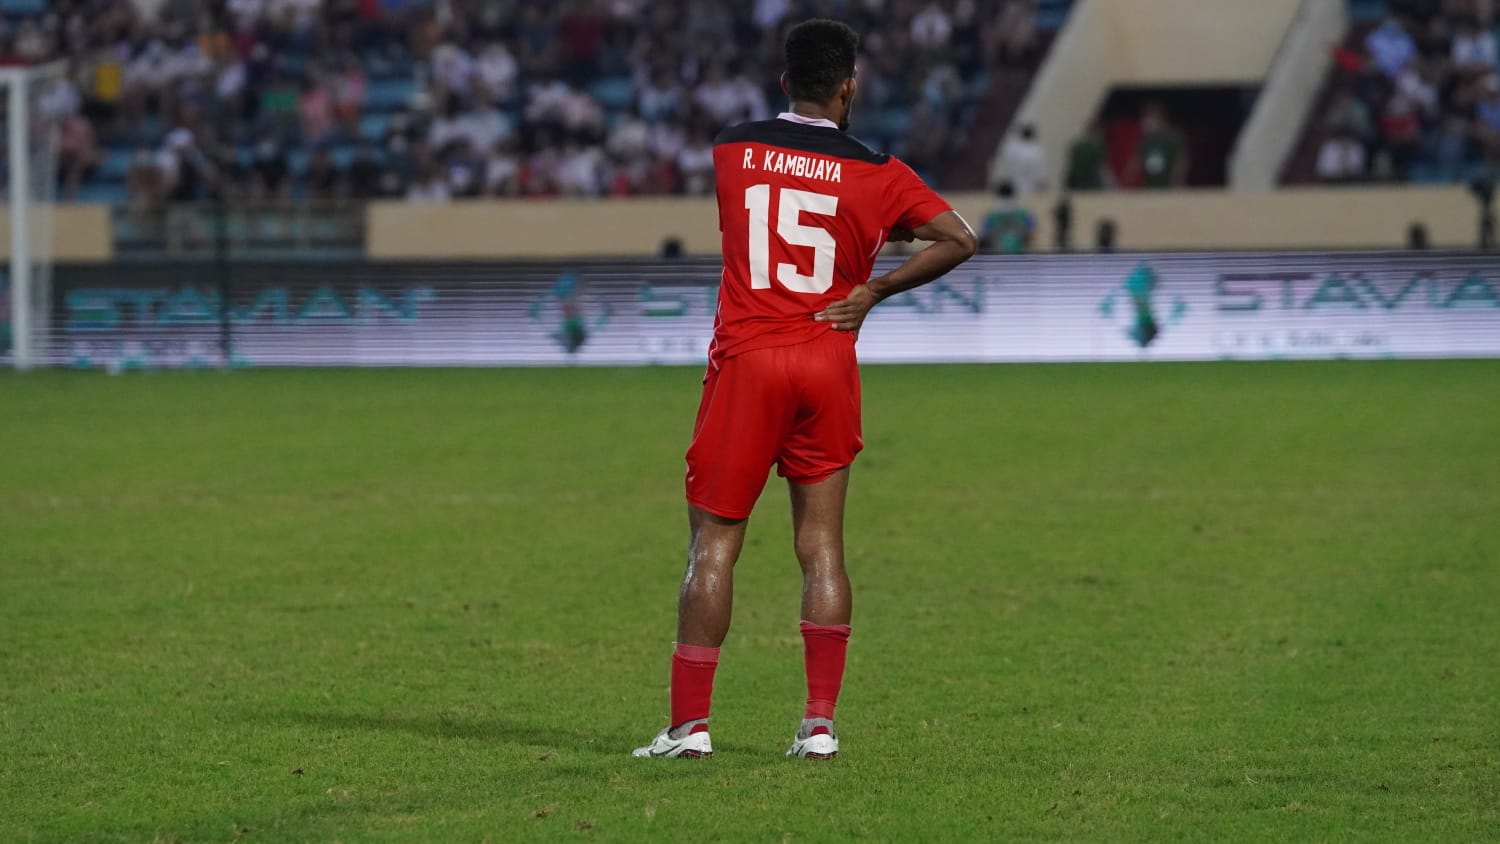 Wakil Malaysia di Piala AFC 2023 Berburu Pemain ASEAN, Rumornya Ricky Kambuaya